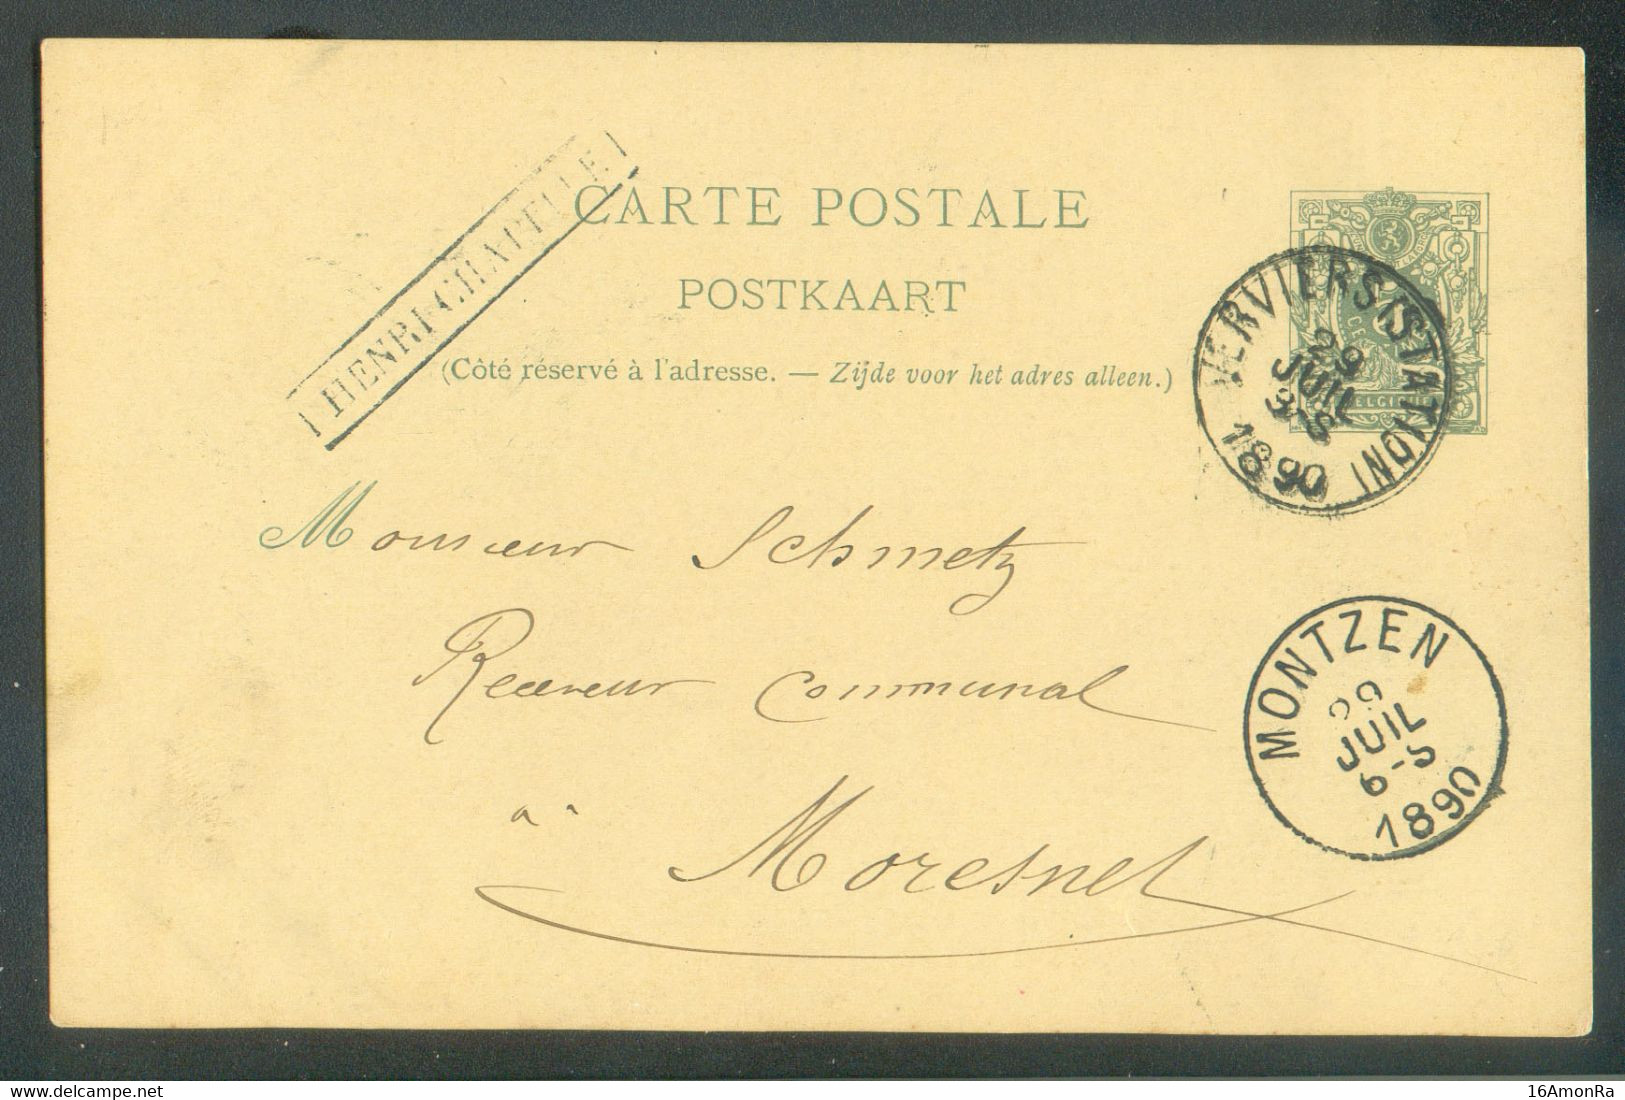 E.P. Carte 5c. Obl. Sc VERVIERS (STATION) Du 29/7/1990 + Griffe HENRI-CHAPELLE Vers Moresnet.  - 18998A - Linear Postmarks